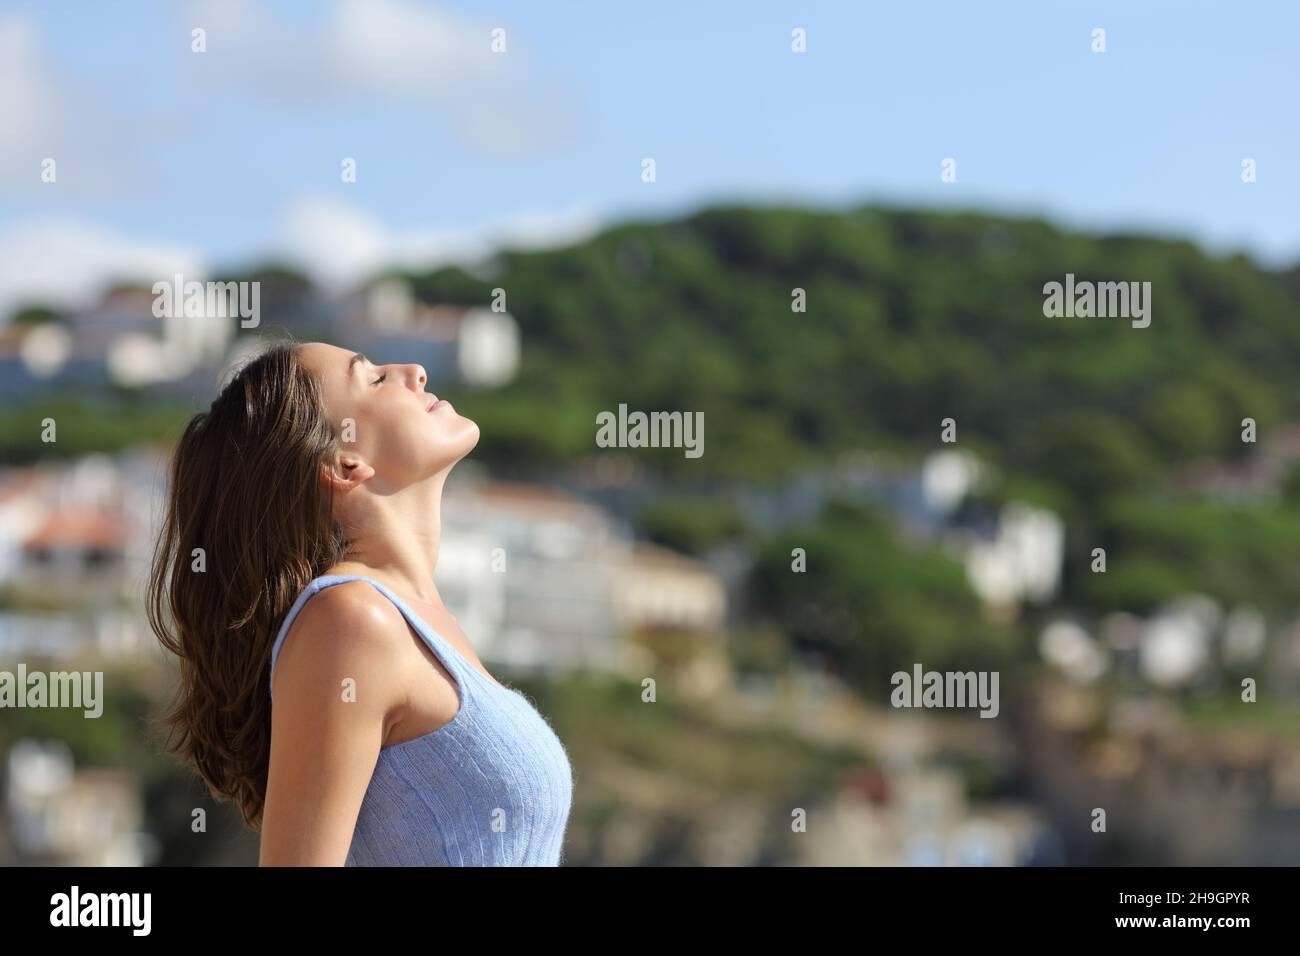 Profil einer Frau, die frische Luft atmet und in einer Bergstadt steht Stockfoto